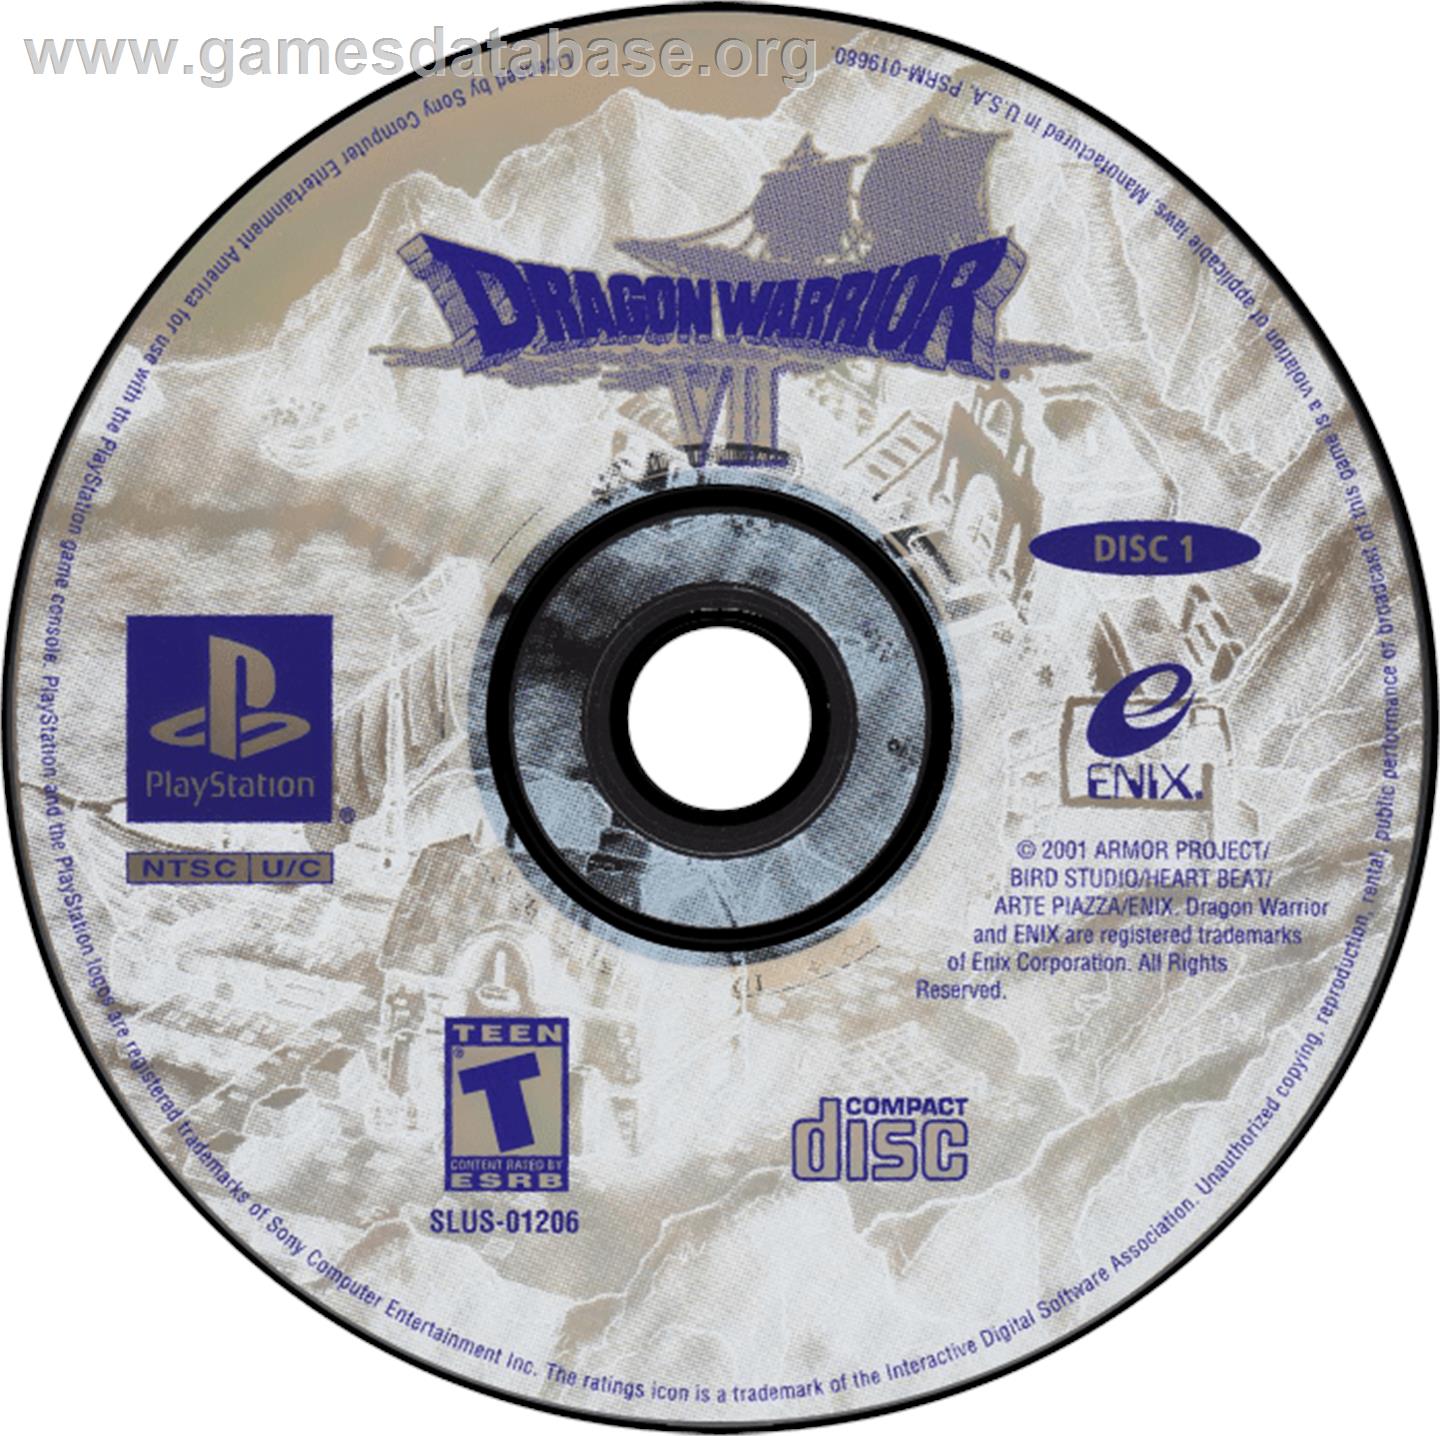 Dragon Warrior VII - Sony Playstation - Artwork - Disc